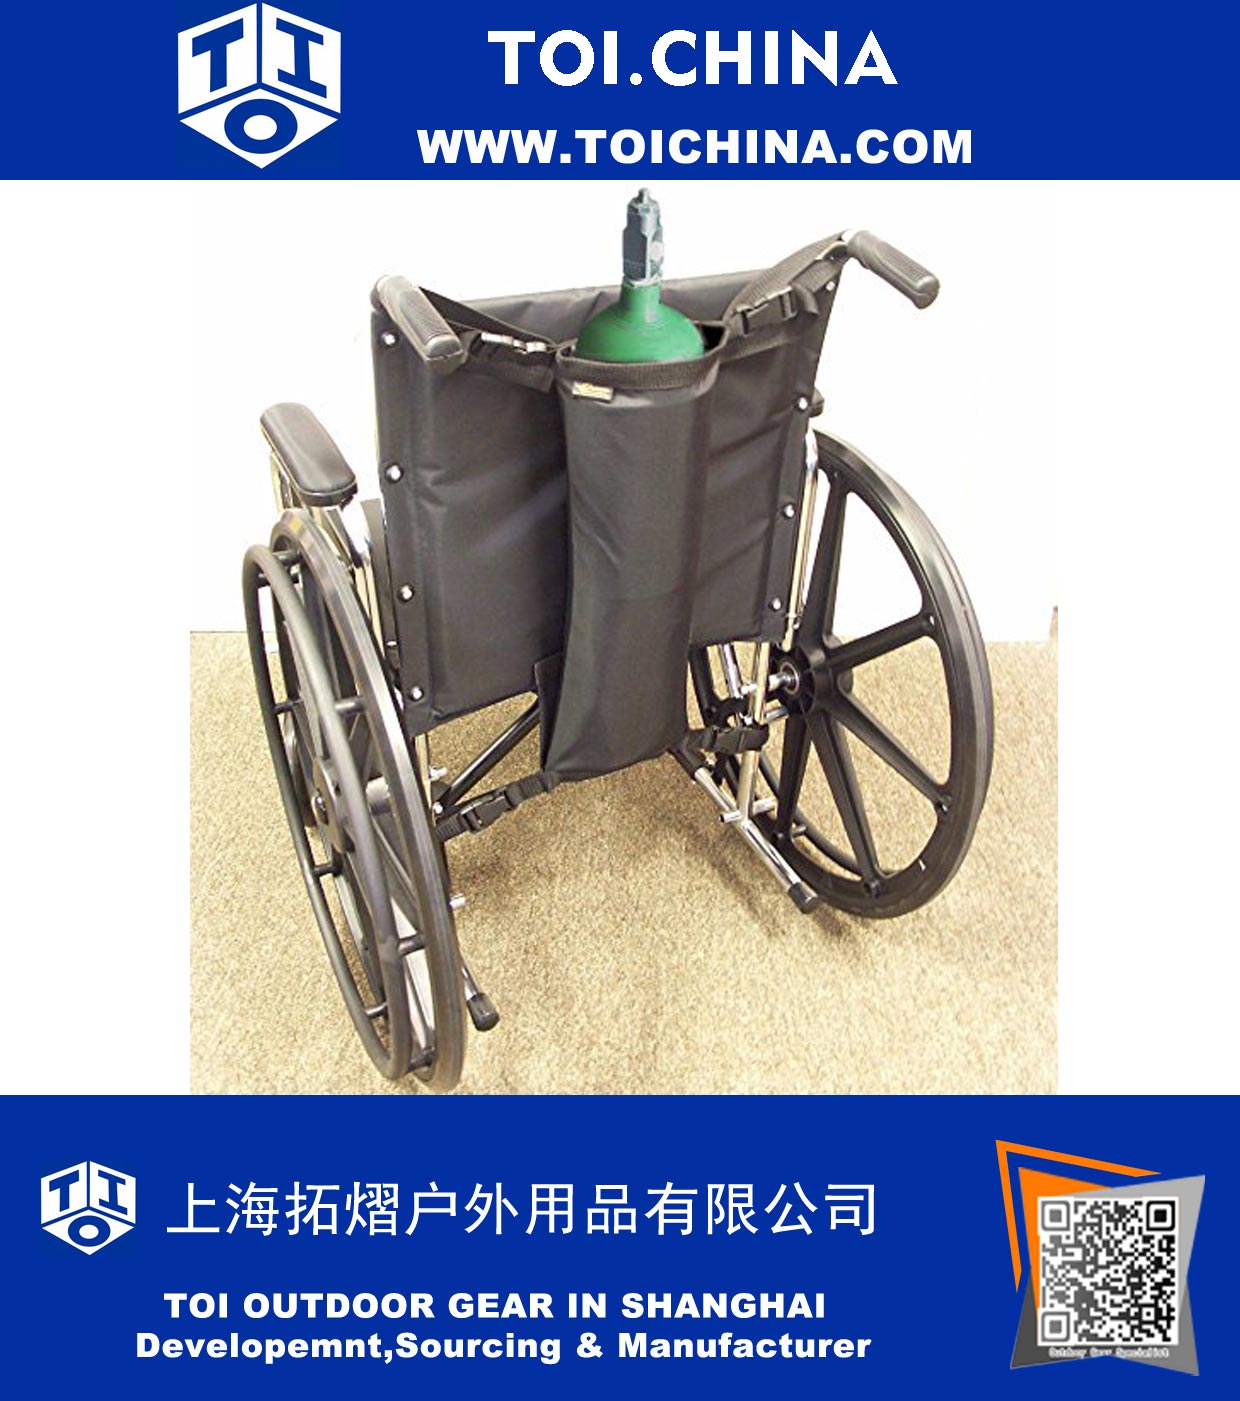 Bolsa de oxígeno individual para sillas de ruedas